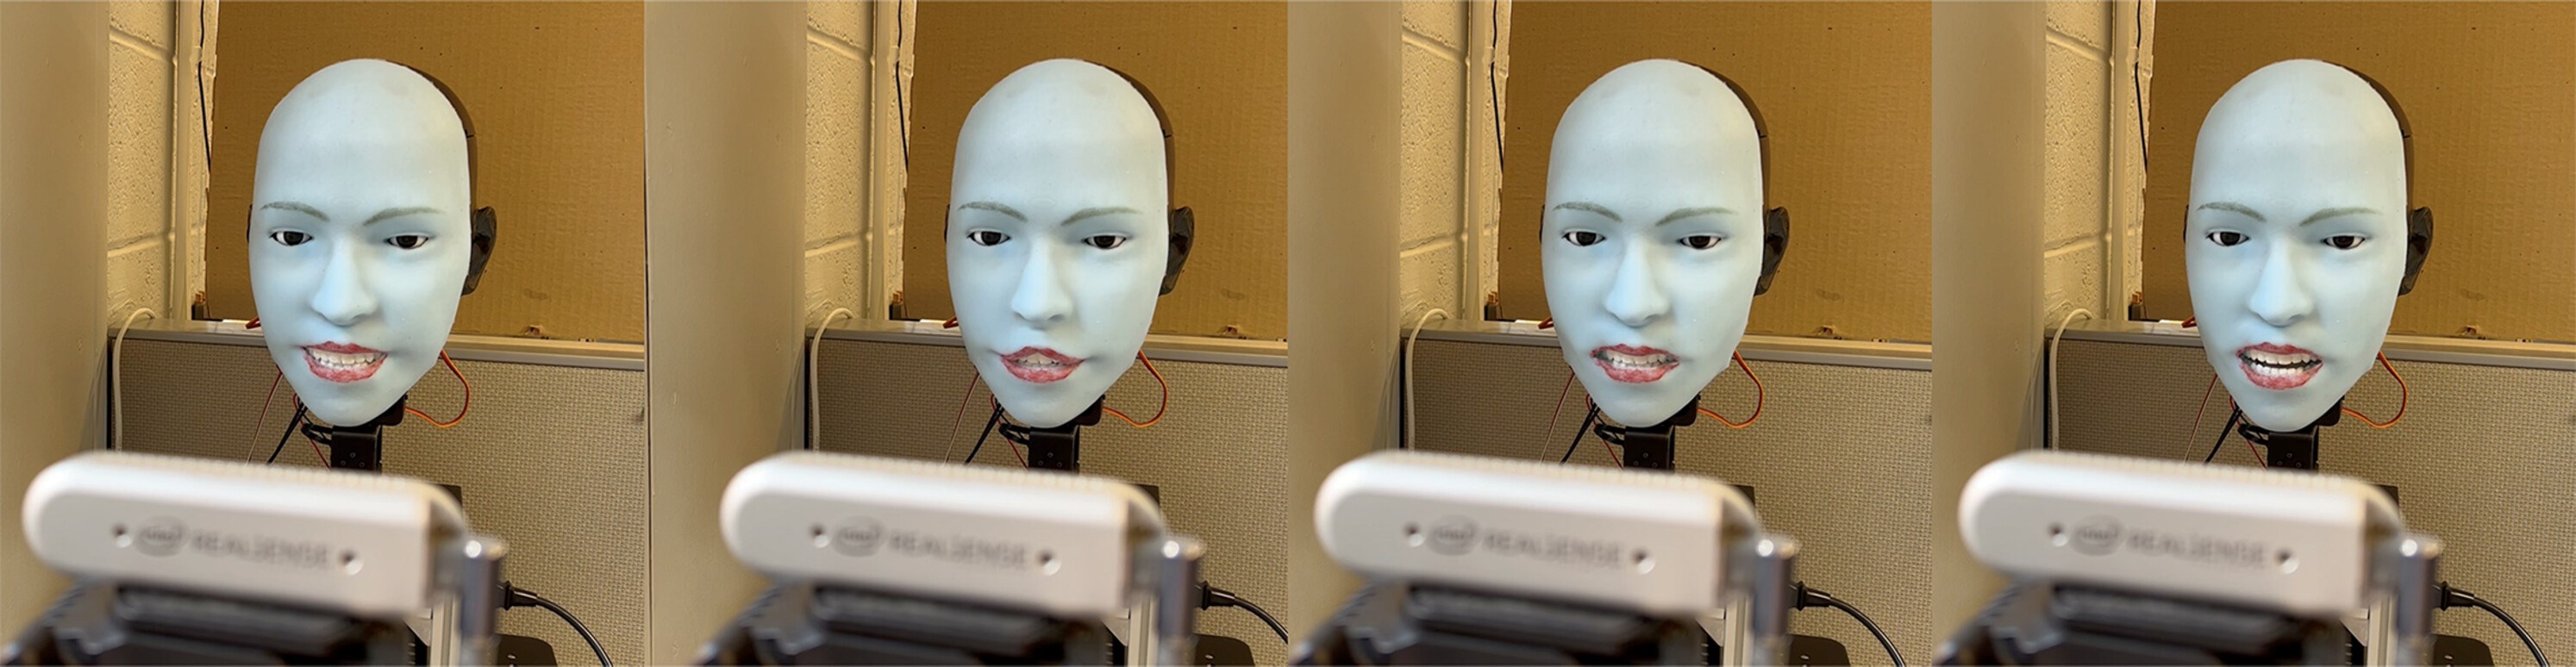 İnsan yüz ifadesini önceden tahmin eden ve taklit eden robot